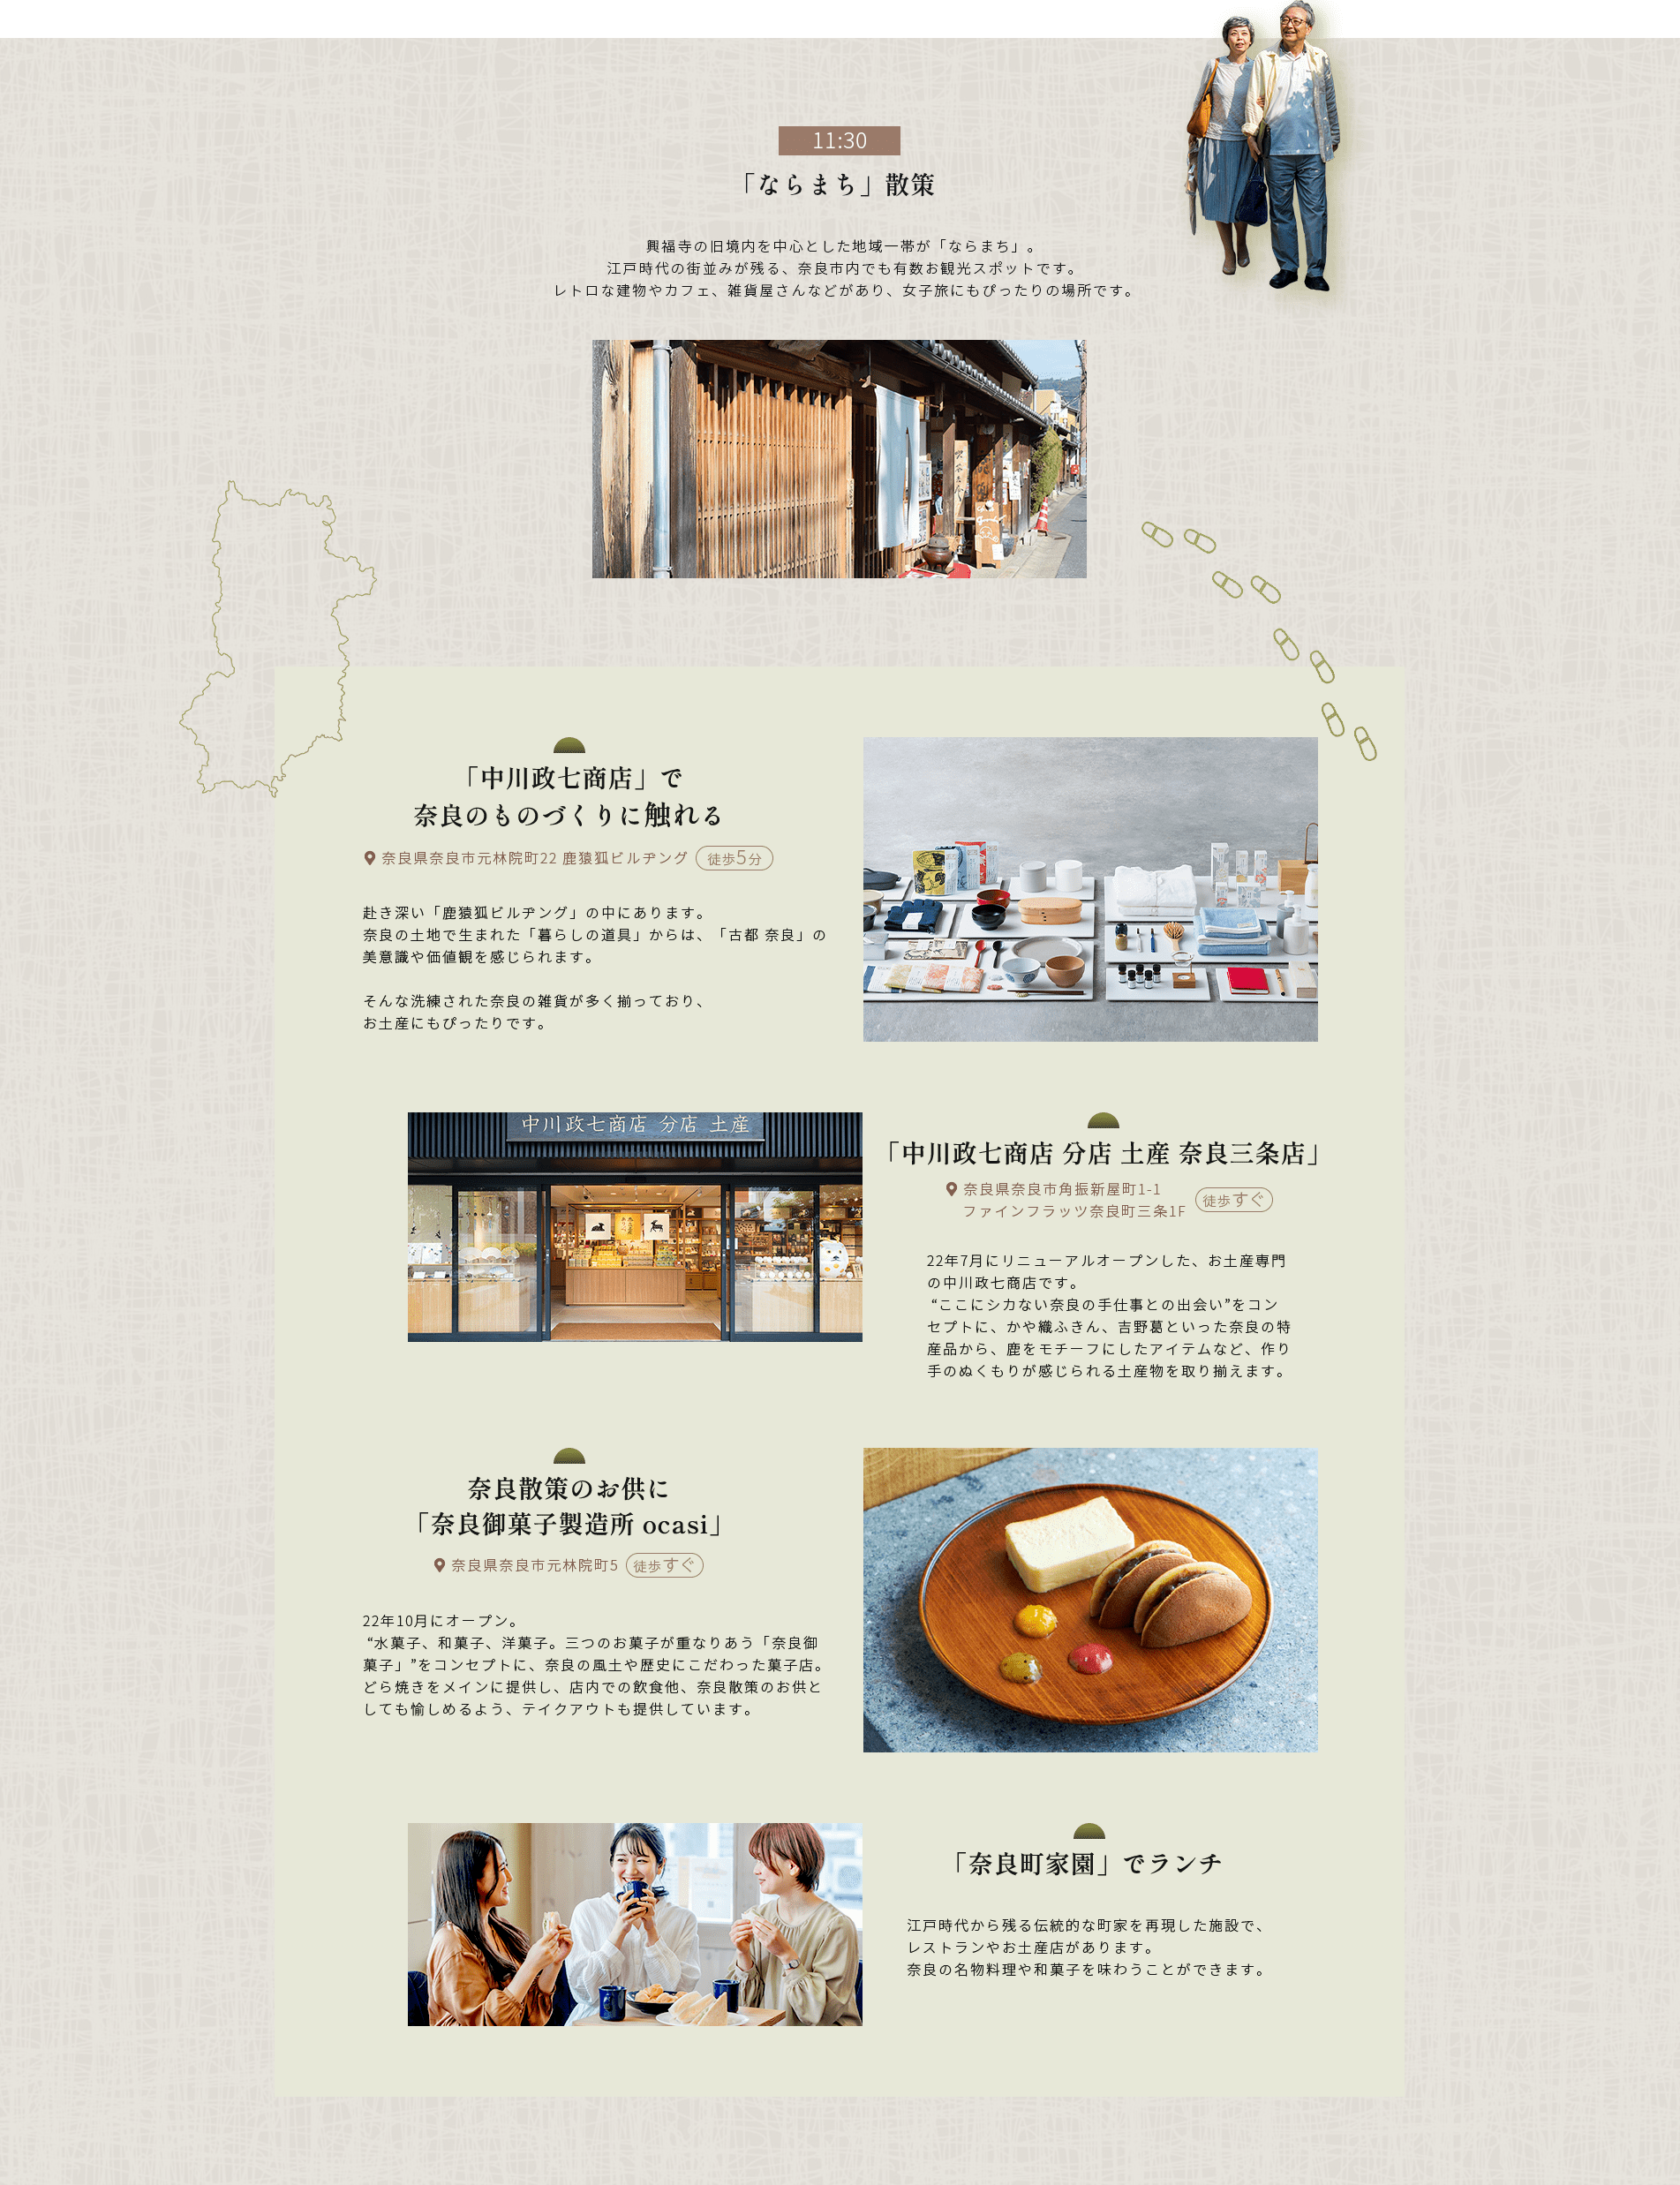 11:30「ならまち」 散策興福寺の境内を中心とした地域一帯が 「ならまち」。江戸時代の街並みが残る、 奈良市内でも有数お観光スポットです。 レトロな建物やカフェ、 雑貨屋さんなどがあり、 女子旅にもぴったりの場所です。「中川政七商店」で奈良のものづくりに触れる● 奈良県奈良市元林院町22 鹿猿狐ビルヂング(徒歩5分赴き深い「鹿猿狐ビルヂング」の中にあります。奈良の土地で生まれた 「暮らしの道具」 からは、 「古都奈良」の 美意識や価値観を感じられます。そんな洗練された奈良の雑貨が多く揃っており、お土産にもぴったりです。中川政七商店 分店 土産奈良散策のお供に「奈良御菓子製造所 ocasi」● 奈良県奈良市元林院町5 (徒歩すぐ22年10月にオープン。“水菓子、和菓子、洋菓子。三つのお菓子が重なりあう 「奈良御 菓子」”をコンセプトに、 奈良の風土や歴史にこだわった菓子店。 どら焼きをメインに提供し、 店内での飲食他、 奈良散策のお供と しても愉しめるよう、 テイクアウトも提供しています。「中川政七商店 分店 土産 奈良三条店」●奈良県奈良市角振新屋町1-1 徒歩すぐ) ファインフラッツ奈良町三条1F22年7月にリニューアルオープンした、 お土産専門 の中川政七商店です。“ここにシカない奈良の手仕事との出会い ” をコンセプトに、かや織ふきん、吉野葛といった奈良の特 産品から、鹿をモチーフにしたアイテムなど、作り手のぬくもりが感じられる土産物を取り揃えます。「奈良町家園」でランチ江戸時代から残る伝統的な町家を再現した施設で、レストランやお土産店があります。奈良の名物料理や和菓子を味わうことができます。